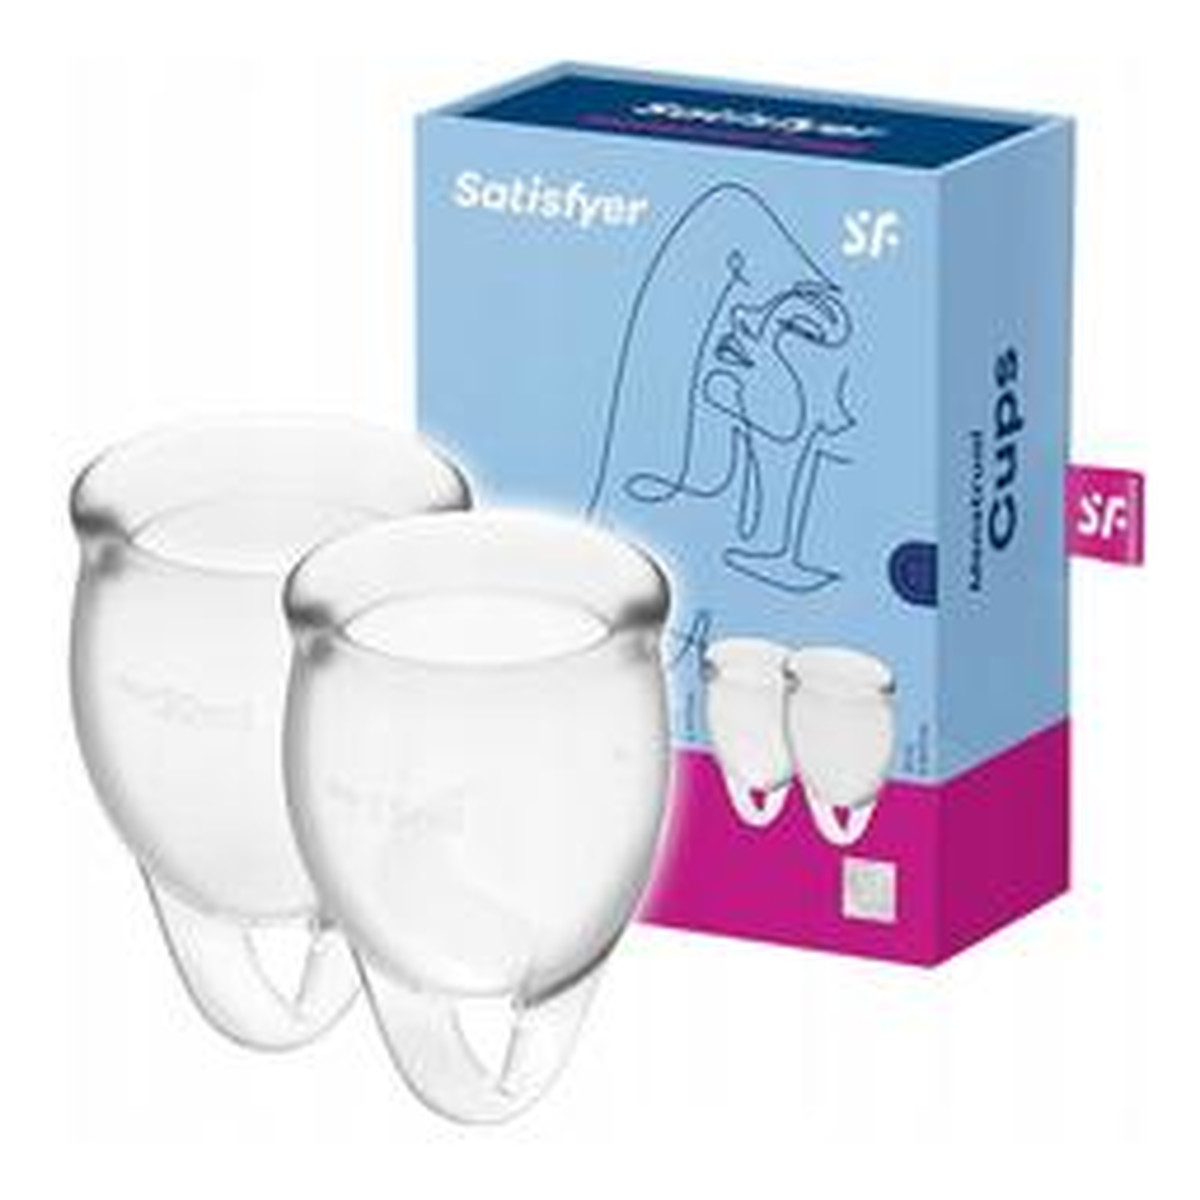 Satisfyer Feel Confident Menstrual Cup zestaw kubeczków menstruacyjnych 15ml + Transparent 20ml